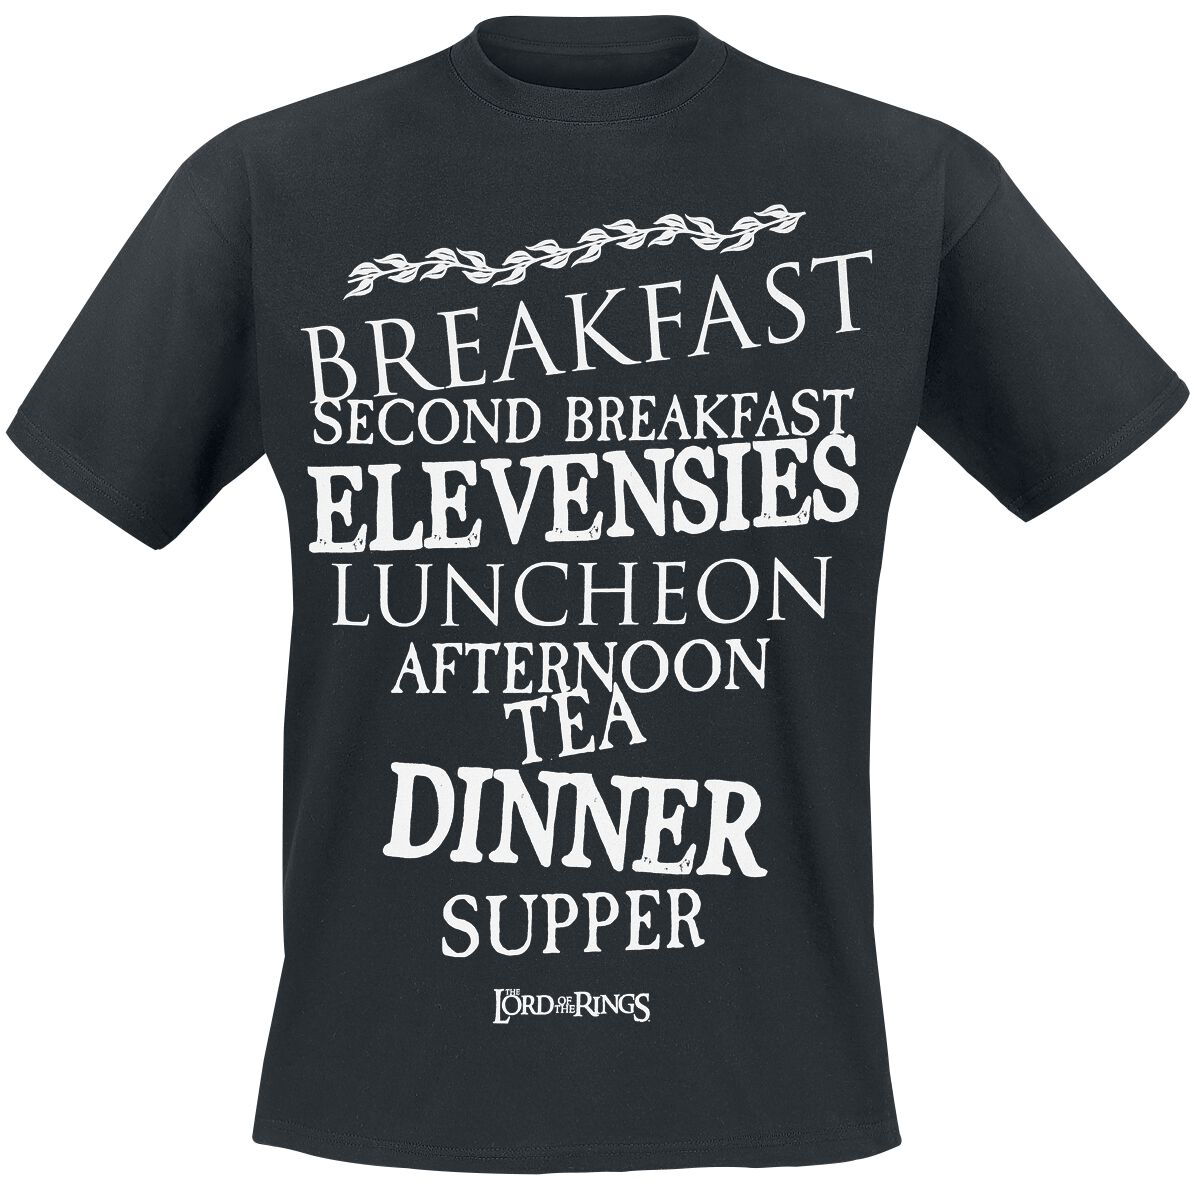 Der Herr der Ringe T-Shirt - Hobbit Meals - S bis 3XL - für Männer - Größe S - schwarz  - EMP exklusives Merchandise!